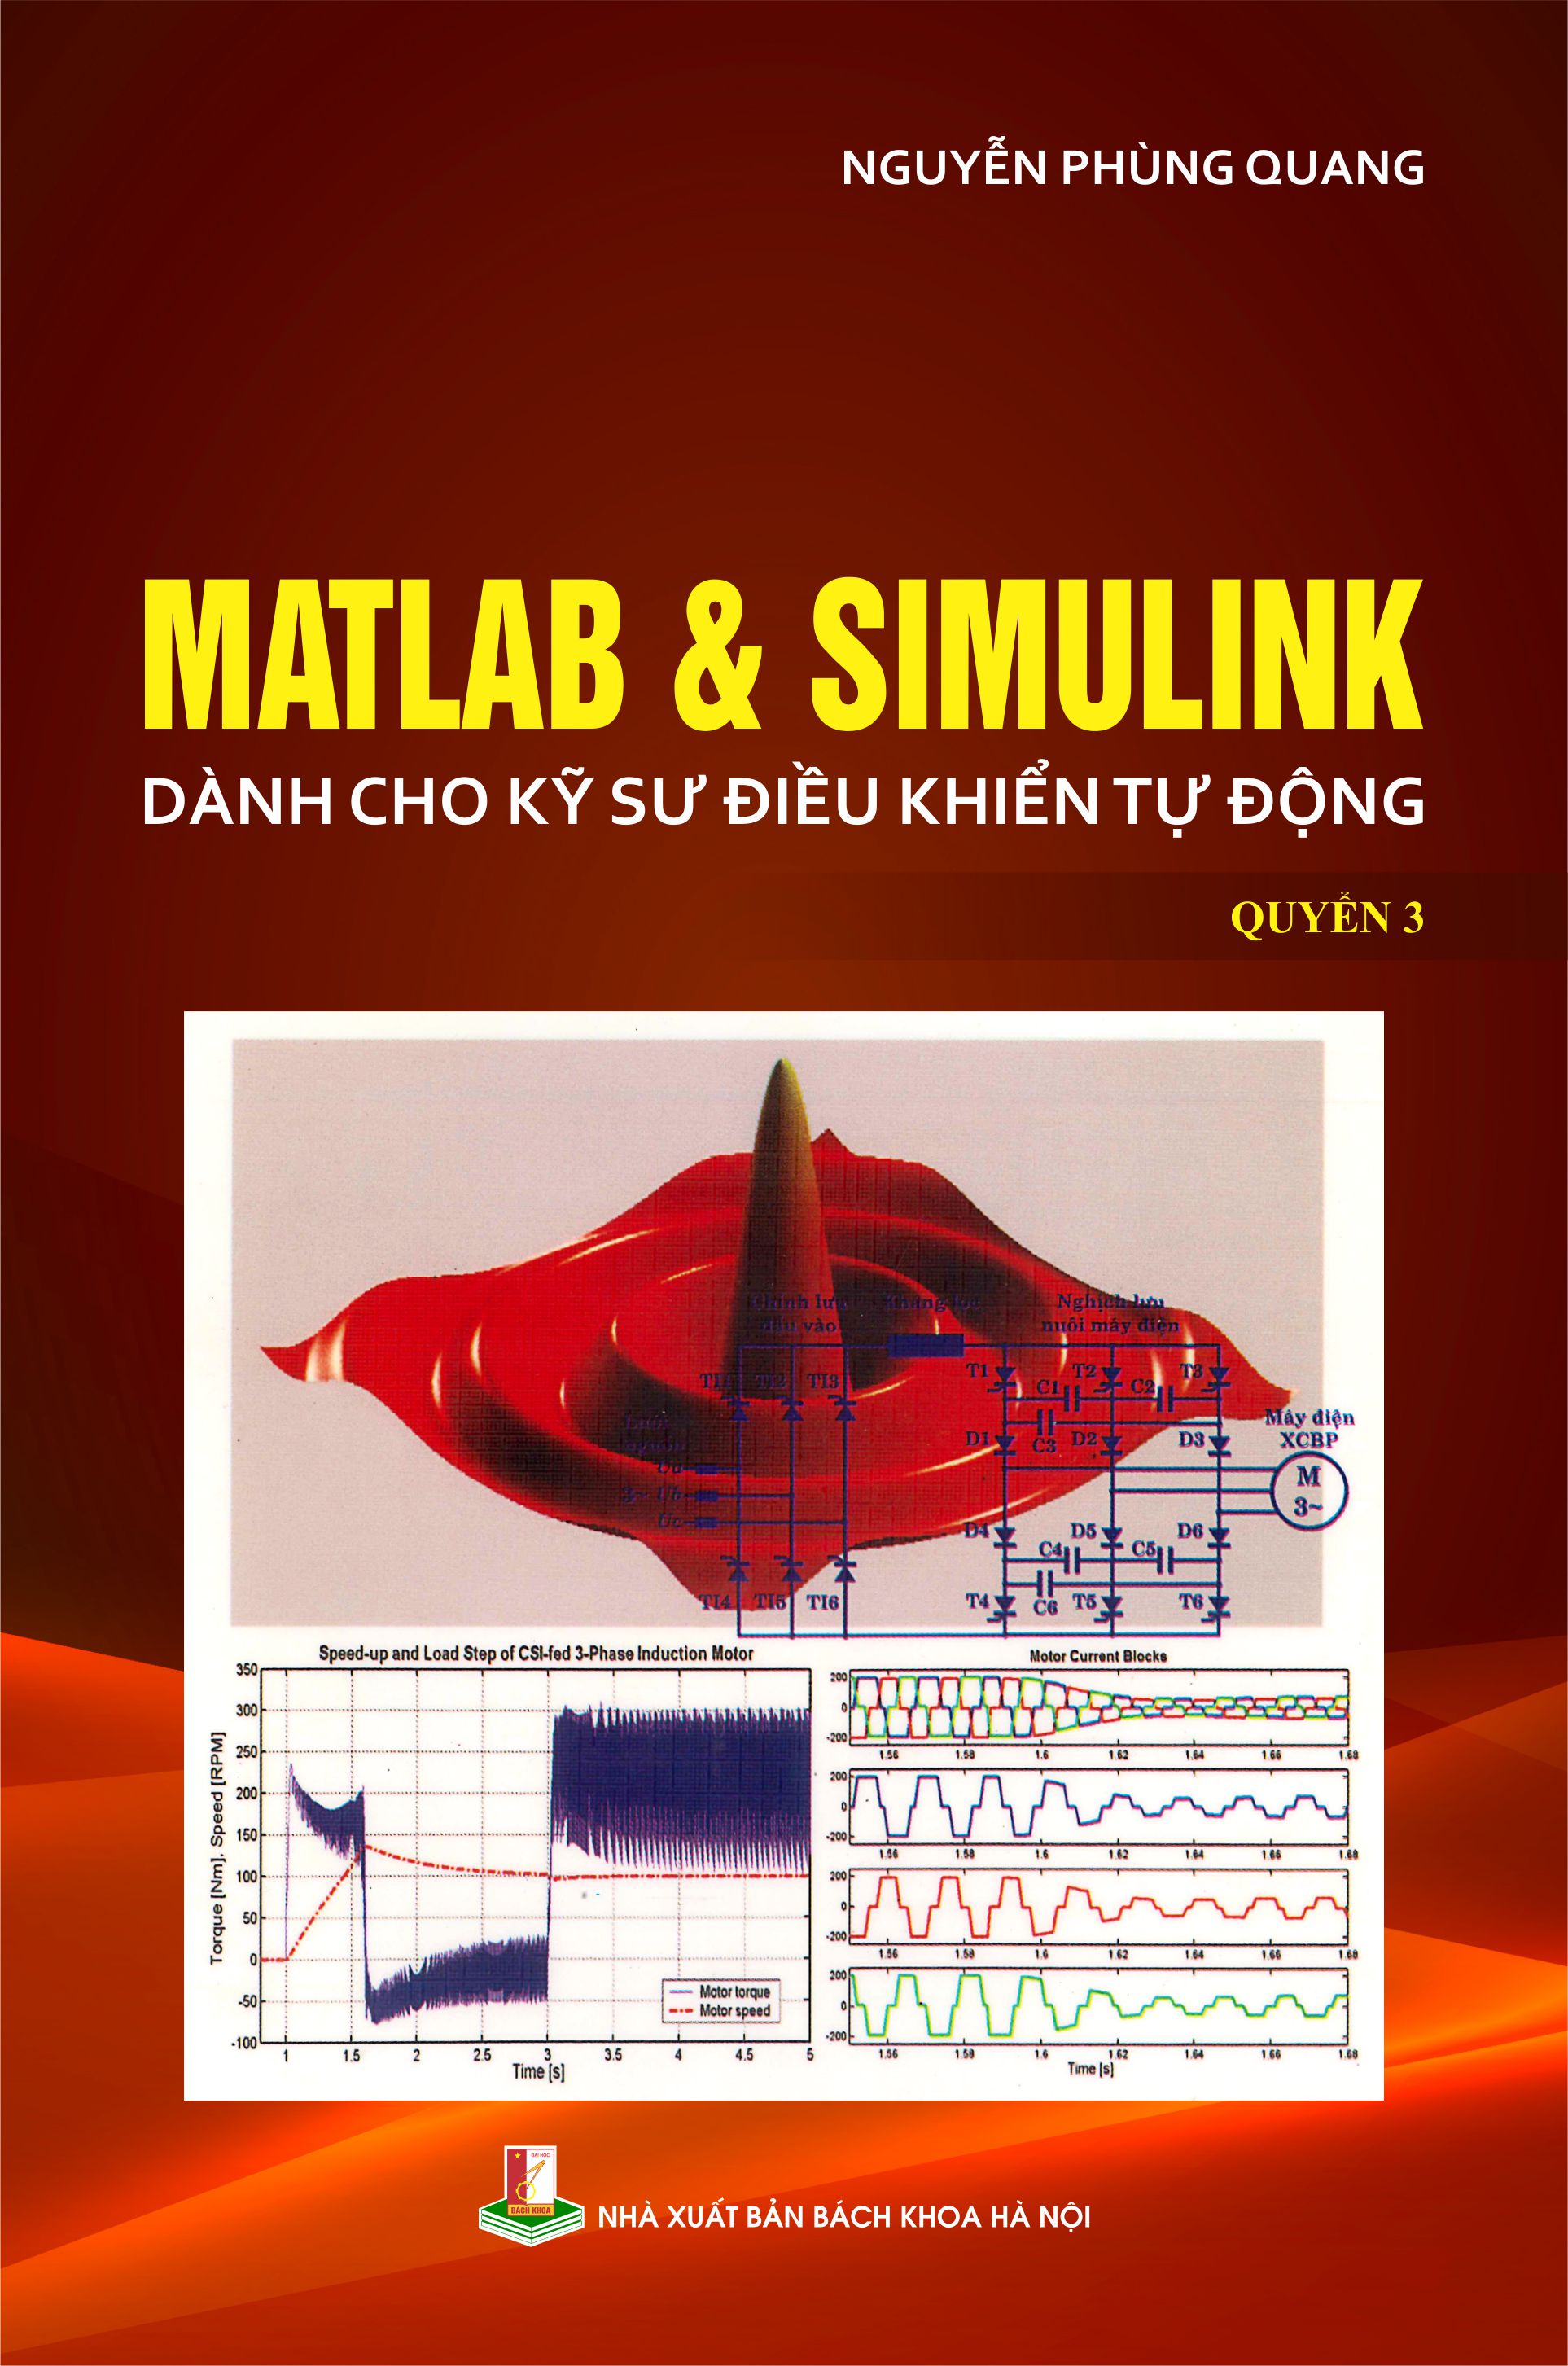 Matlab & Simulink dành cho kỹ sư điều khiển tự động Quyển 3
